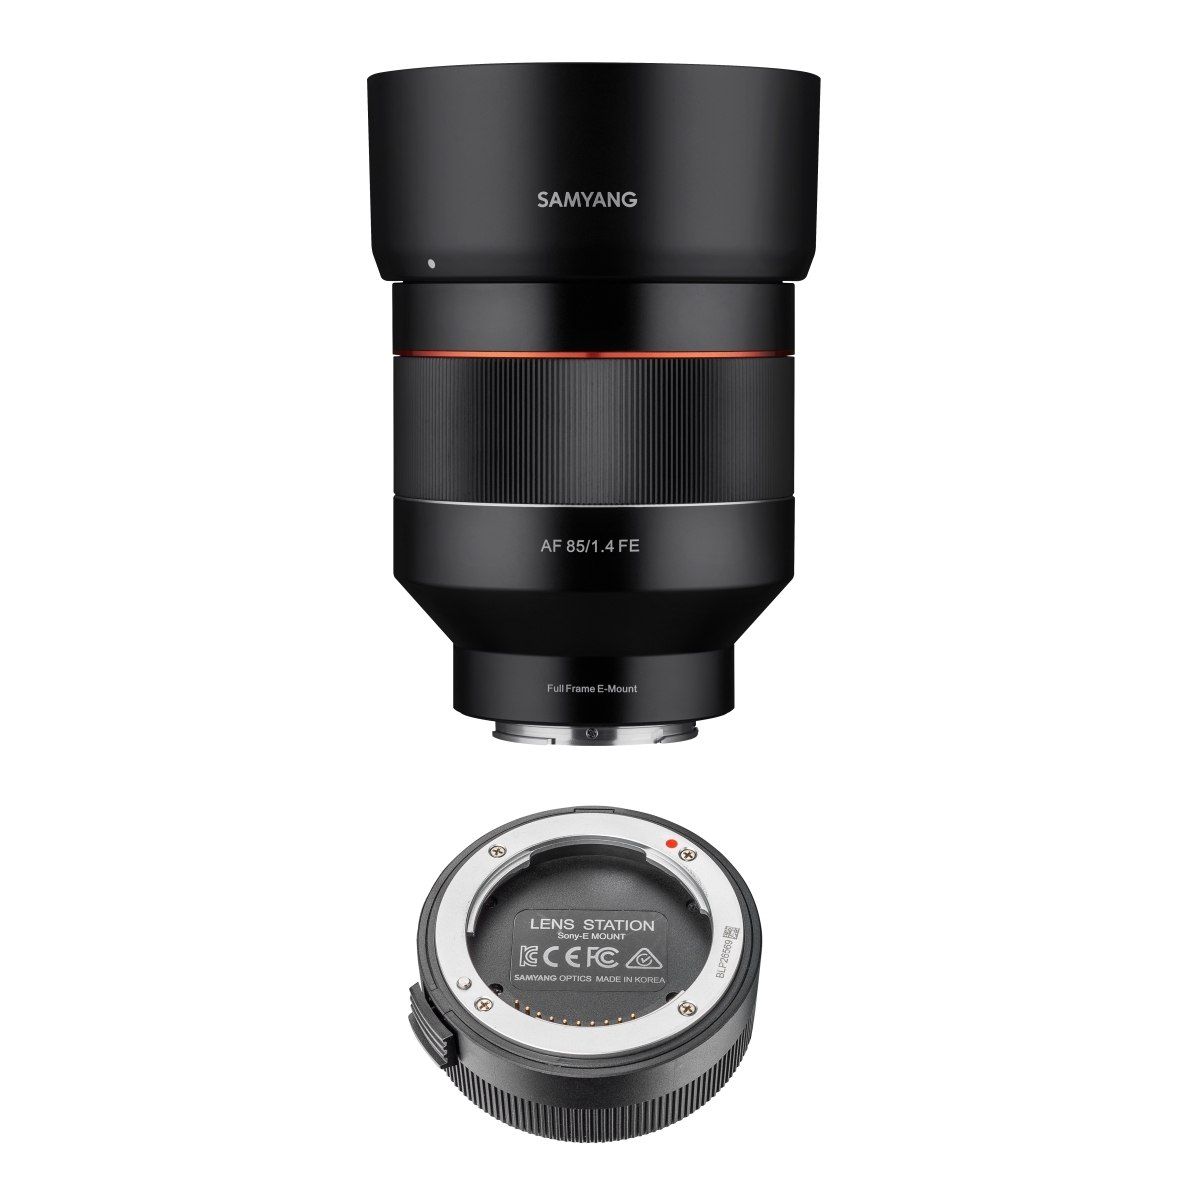 SAMYANG Lens Manager E schwarz AF 0 für millimetres Sony (Lens E-Mount, weiß) / Station Sony für